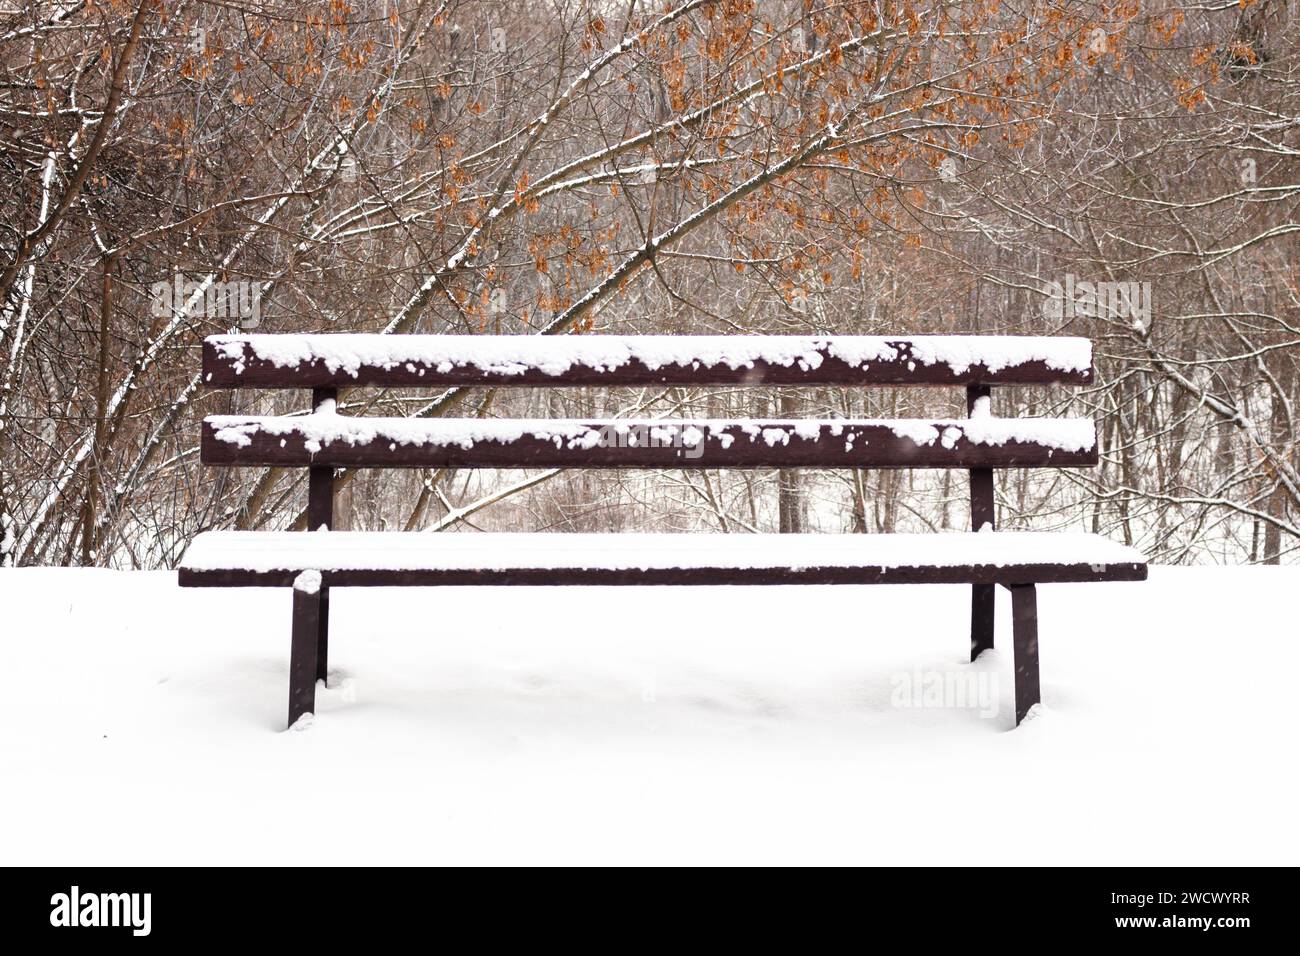 Mit Schnee bedeckte Bank im gefrorenen Wald. Leere Bank im schneebedeckten Park. Winterwetter. Holzbank im Park bei Schneefall. Friedliche Winterlandschaft. Stockfoto